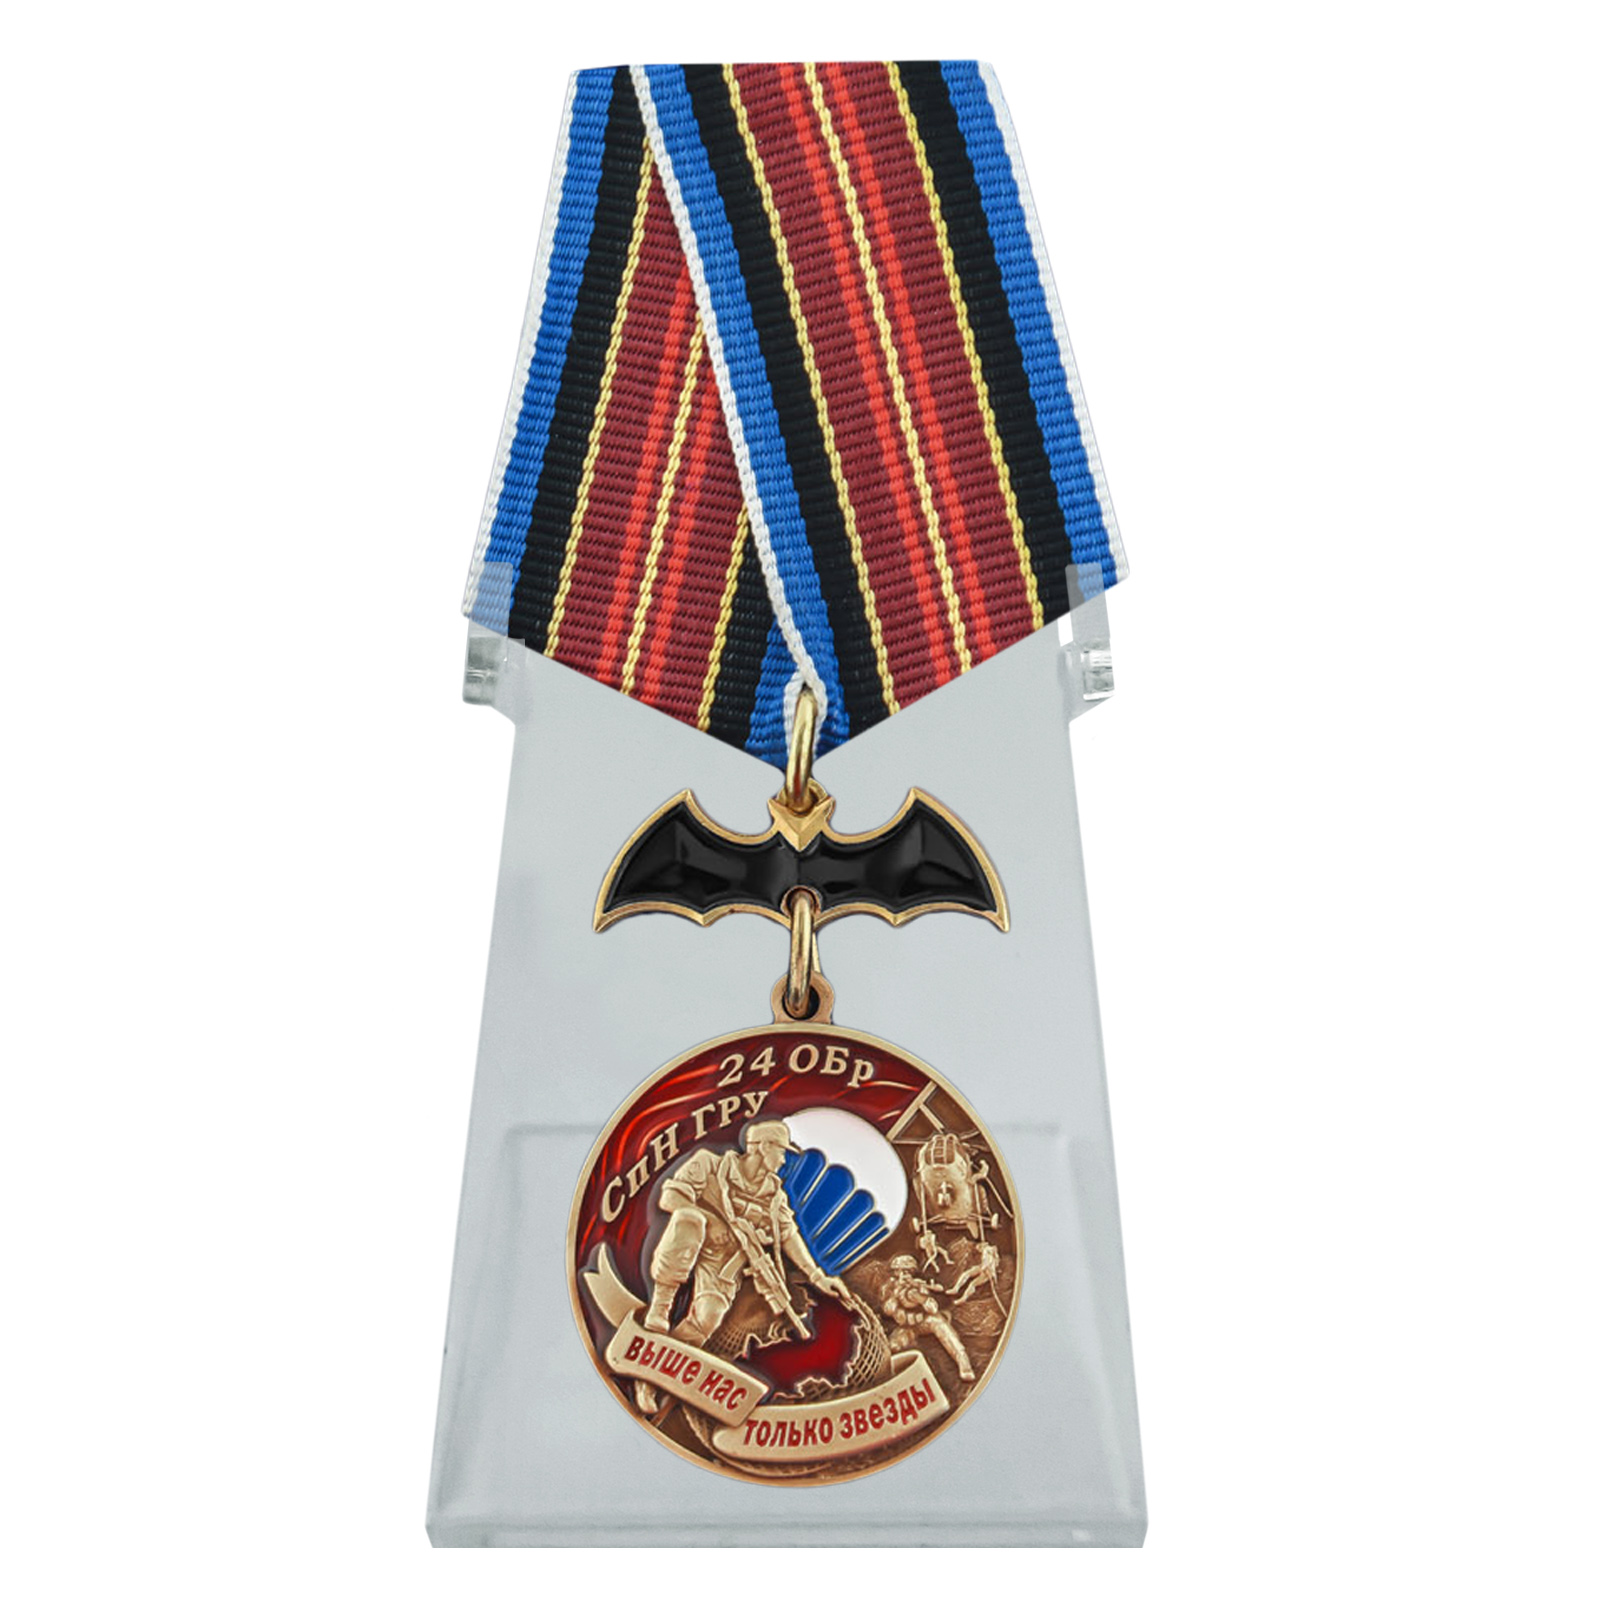 Купить медаль 24 ОБрСпН ГРУ на подставке по лучшей цене